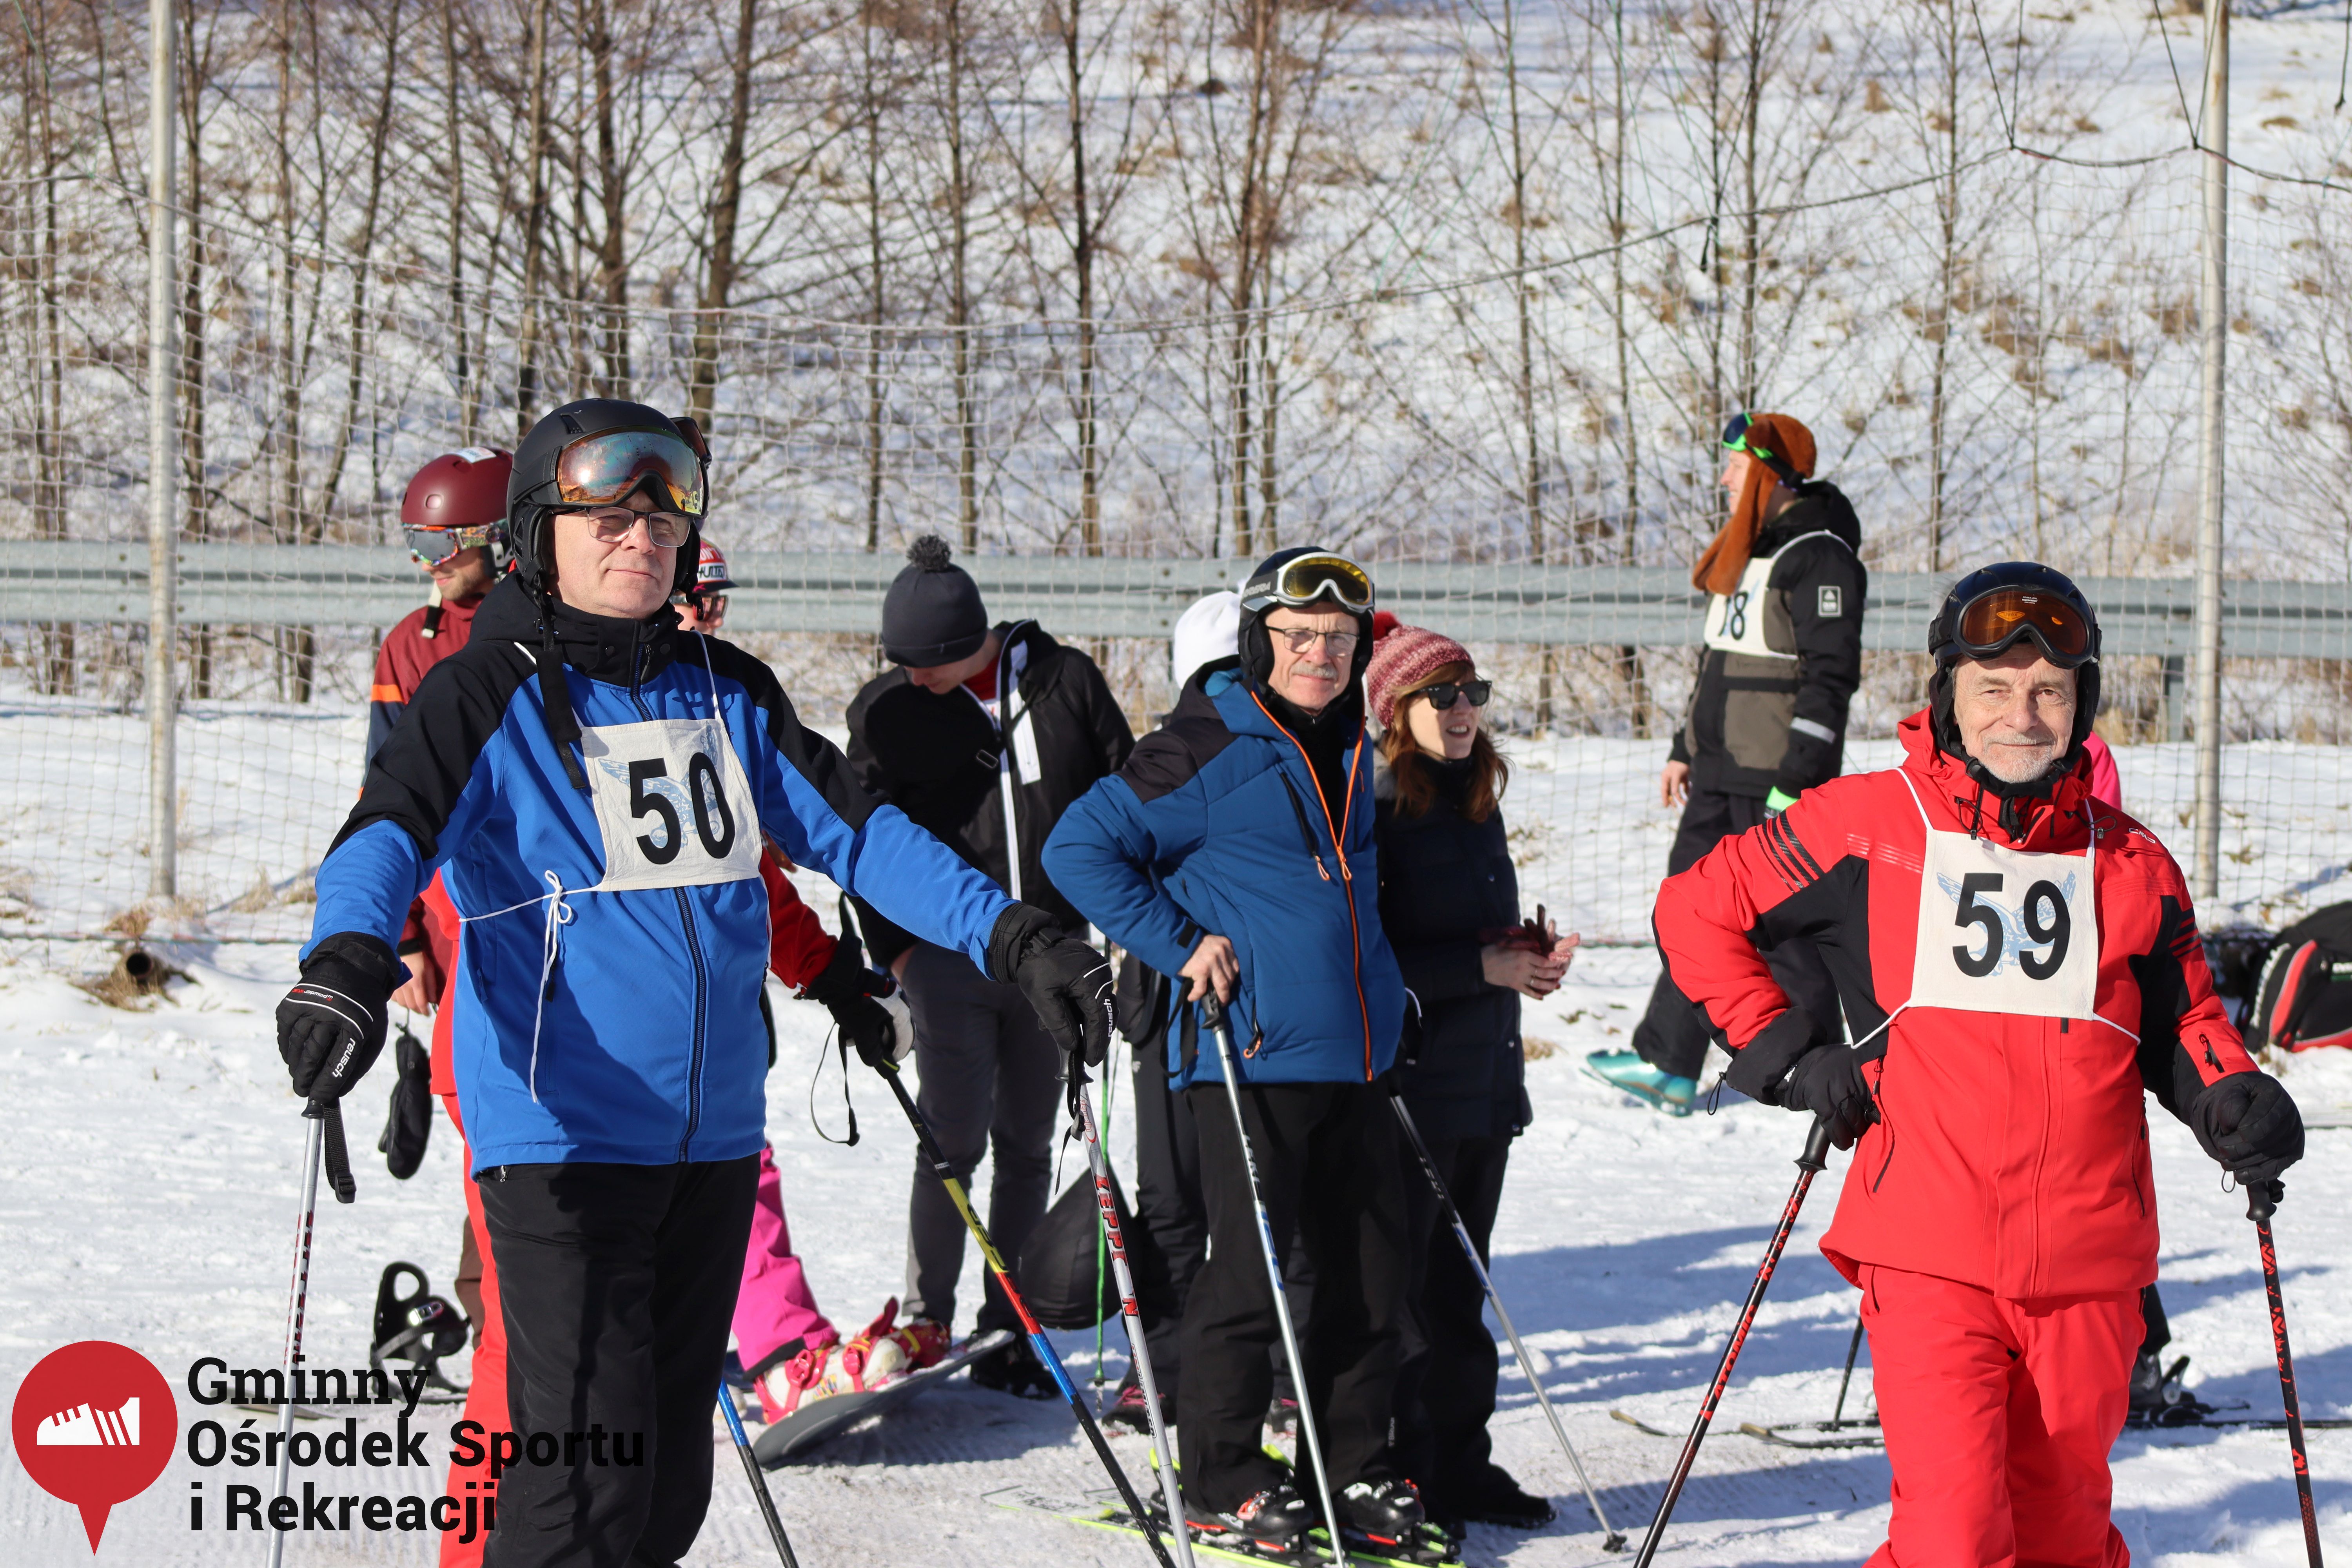 2022.02.12 - 18. Mistrzostwa Gminy Woszakowice w narciarstwie011.jpg - 2,34 MB